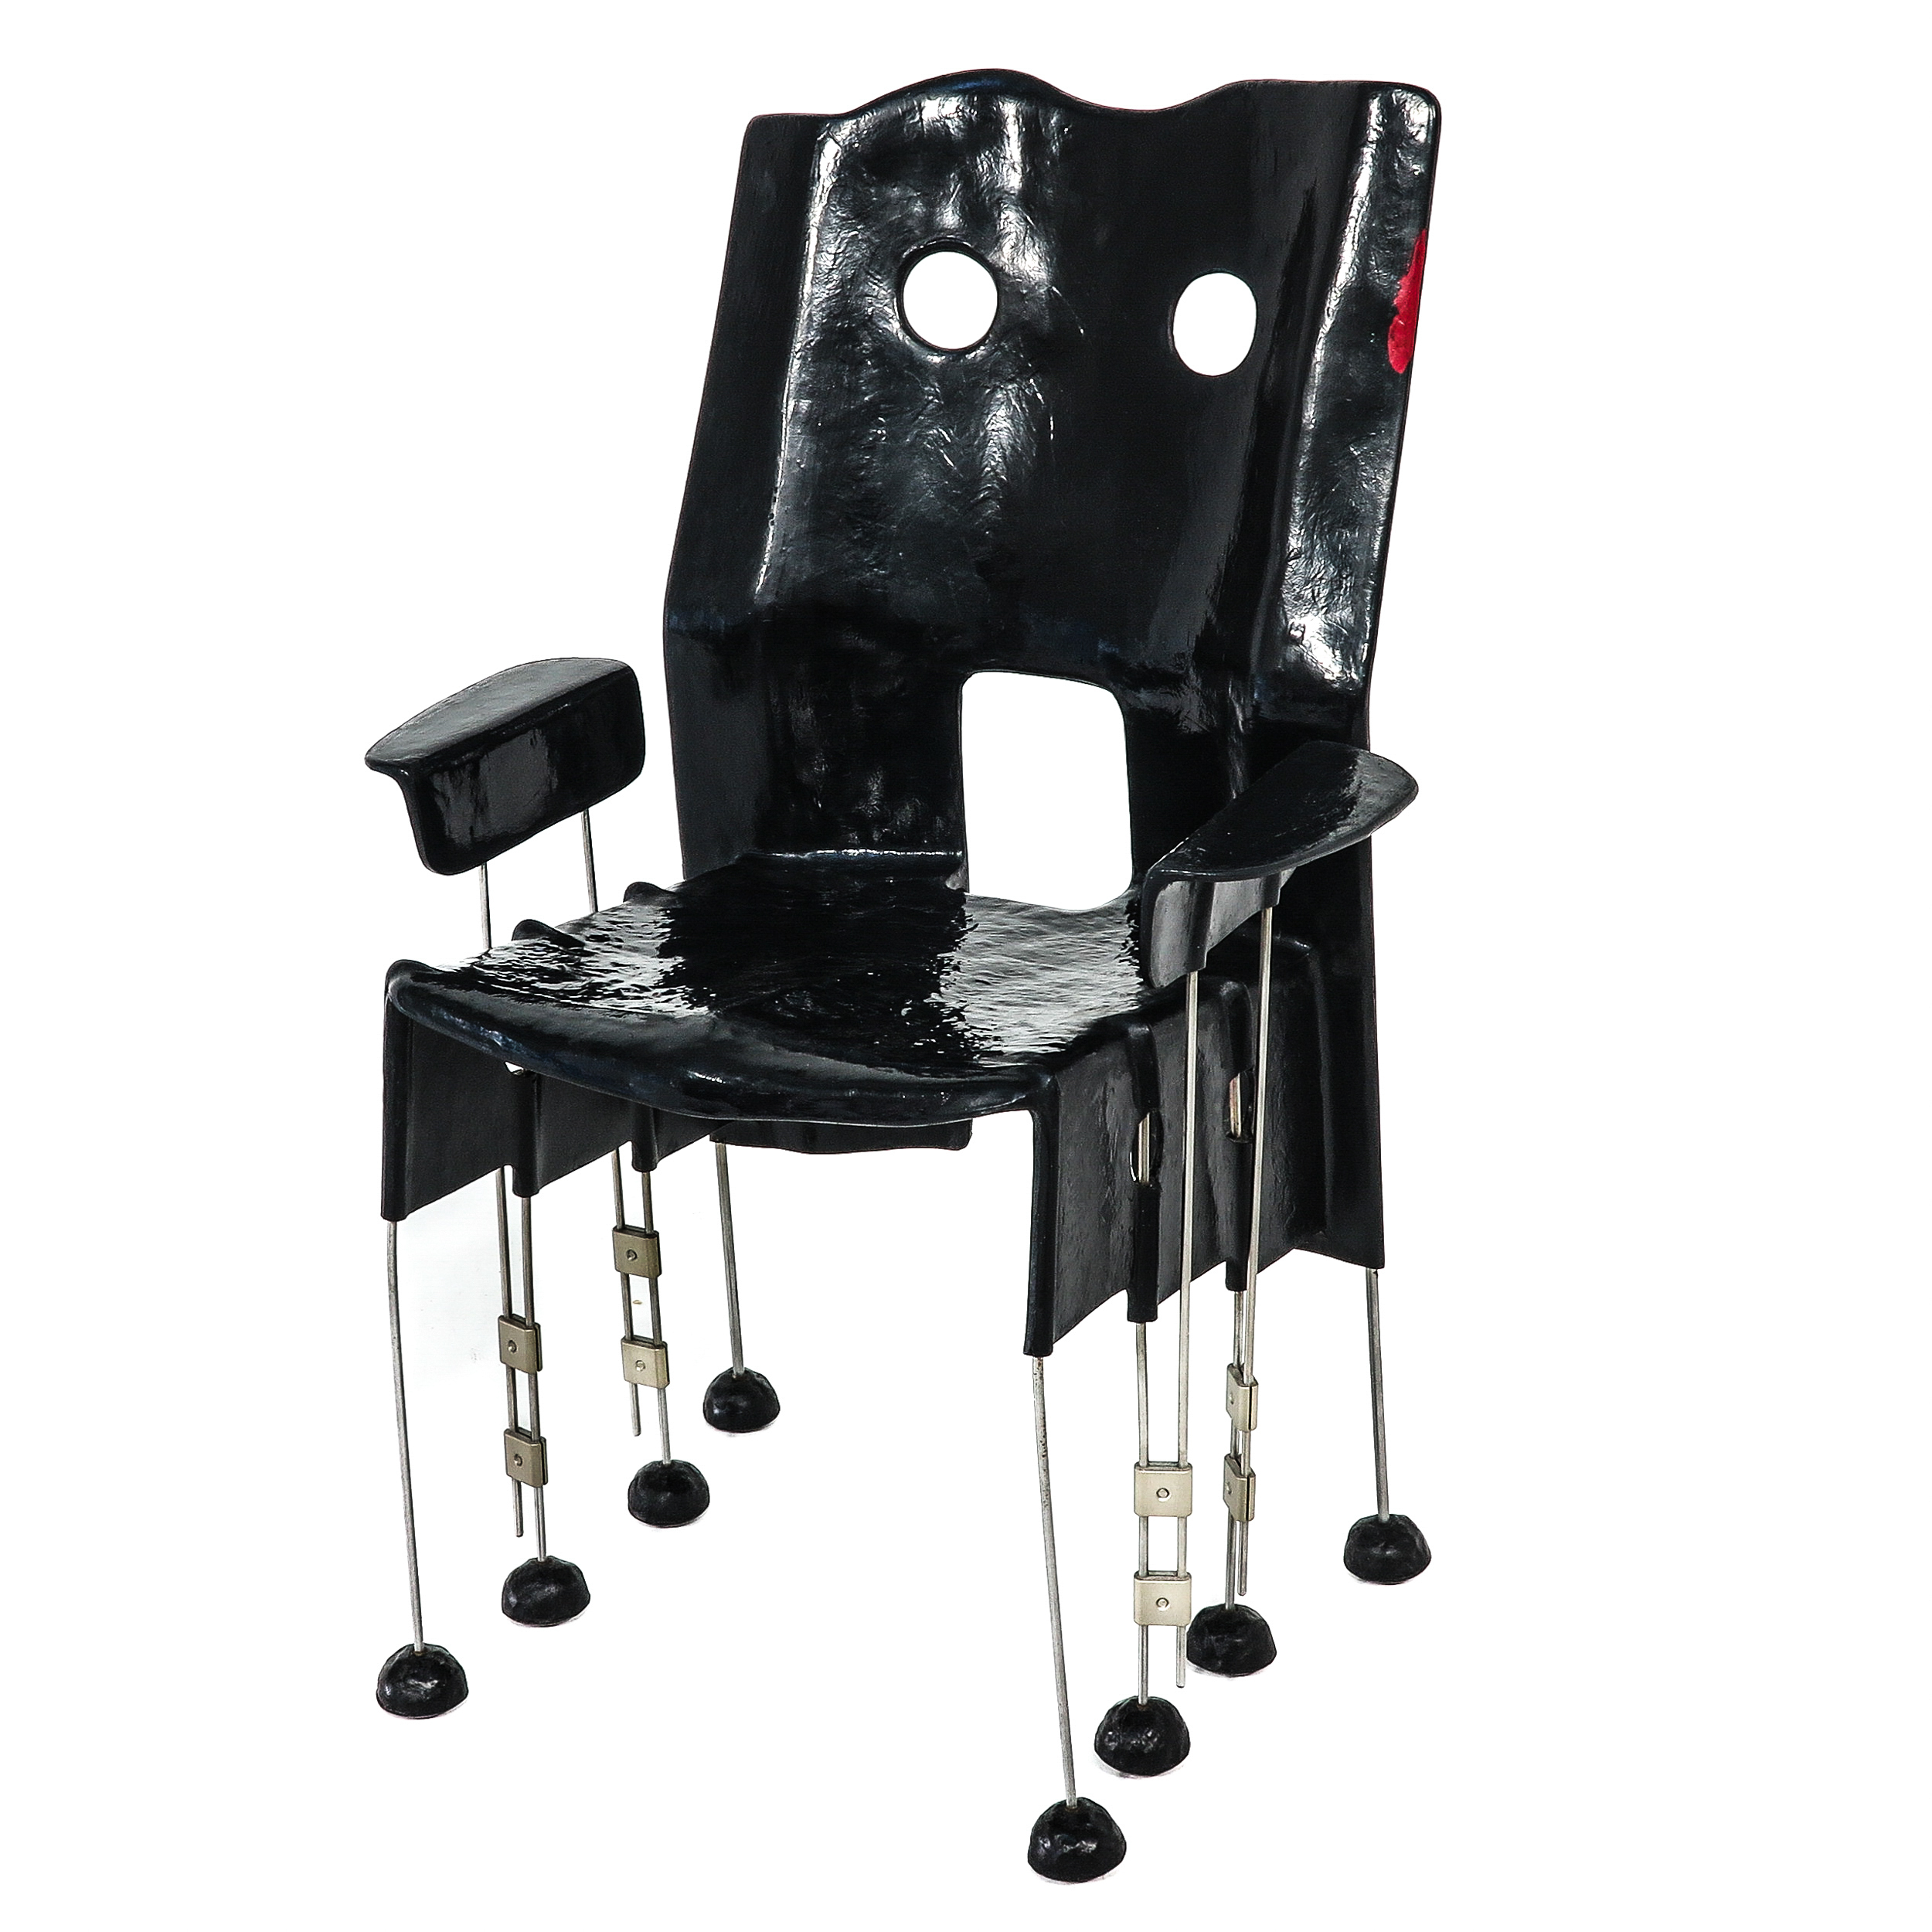 A Design Chair by Gaetano Pesce